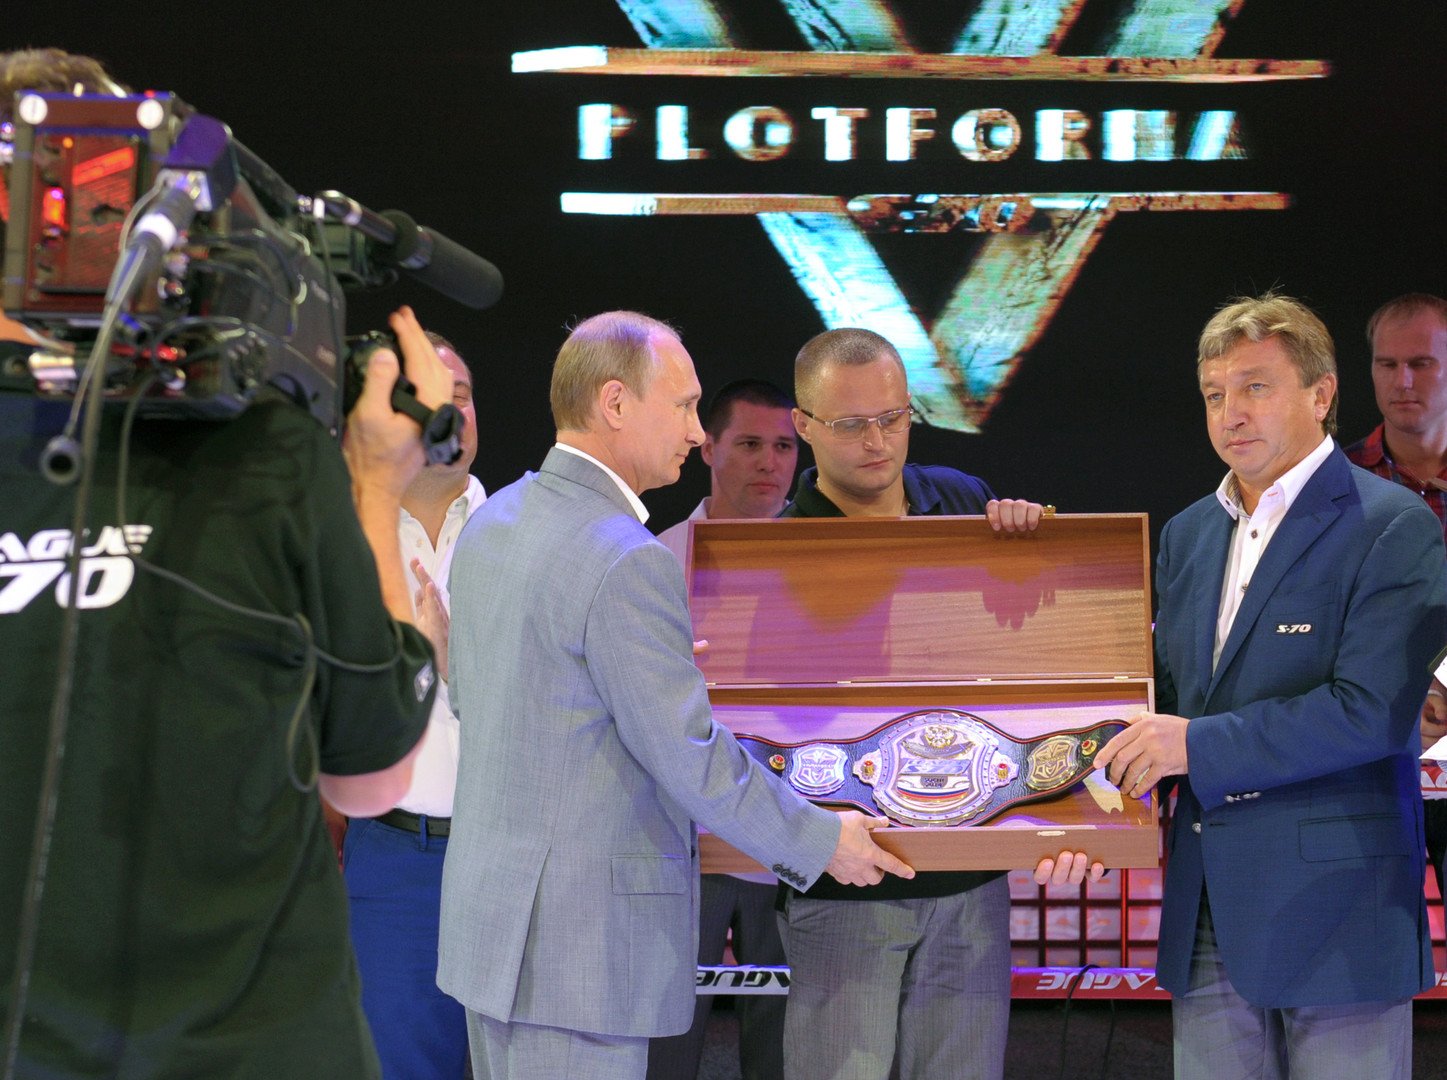 فيديو.. الرئيس بوتين يحضر البطولة الدولية للسامبا في سوتشي ويساعد أحد المصارعين